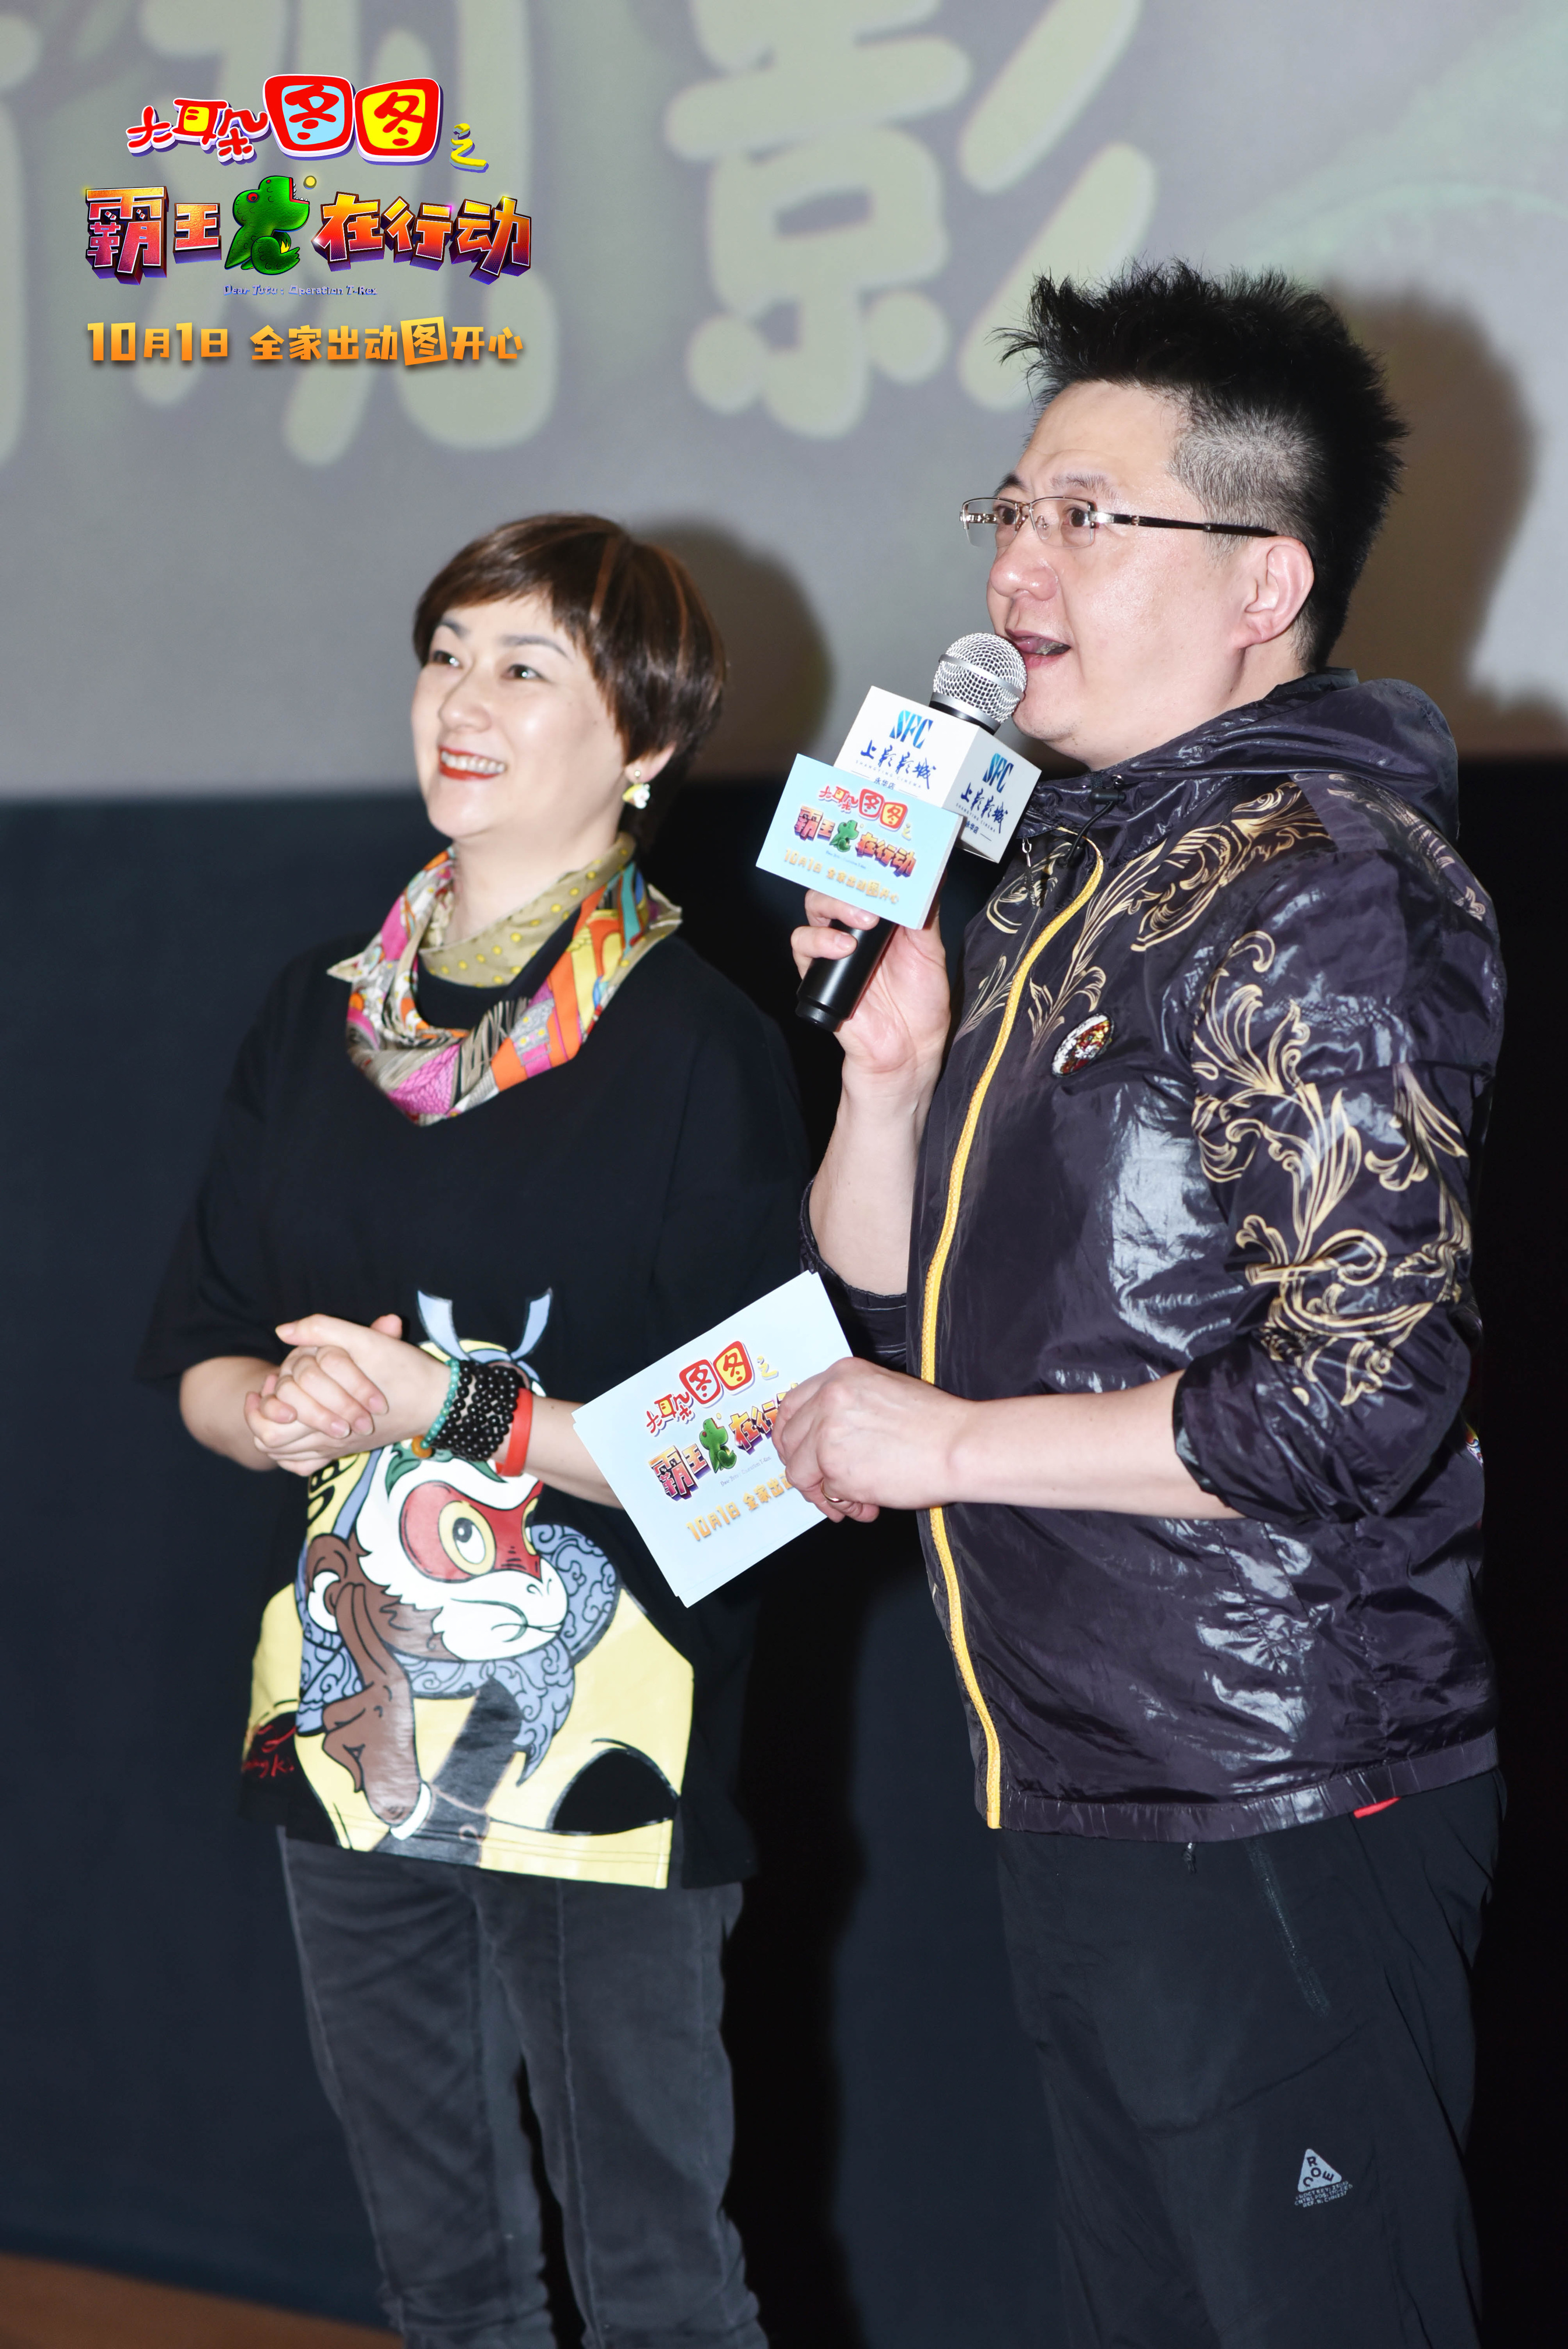 《大耳朵图图》大电影上海首映 导演速达分享温暖感动